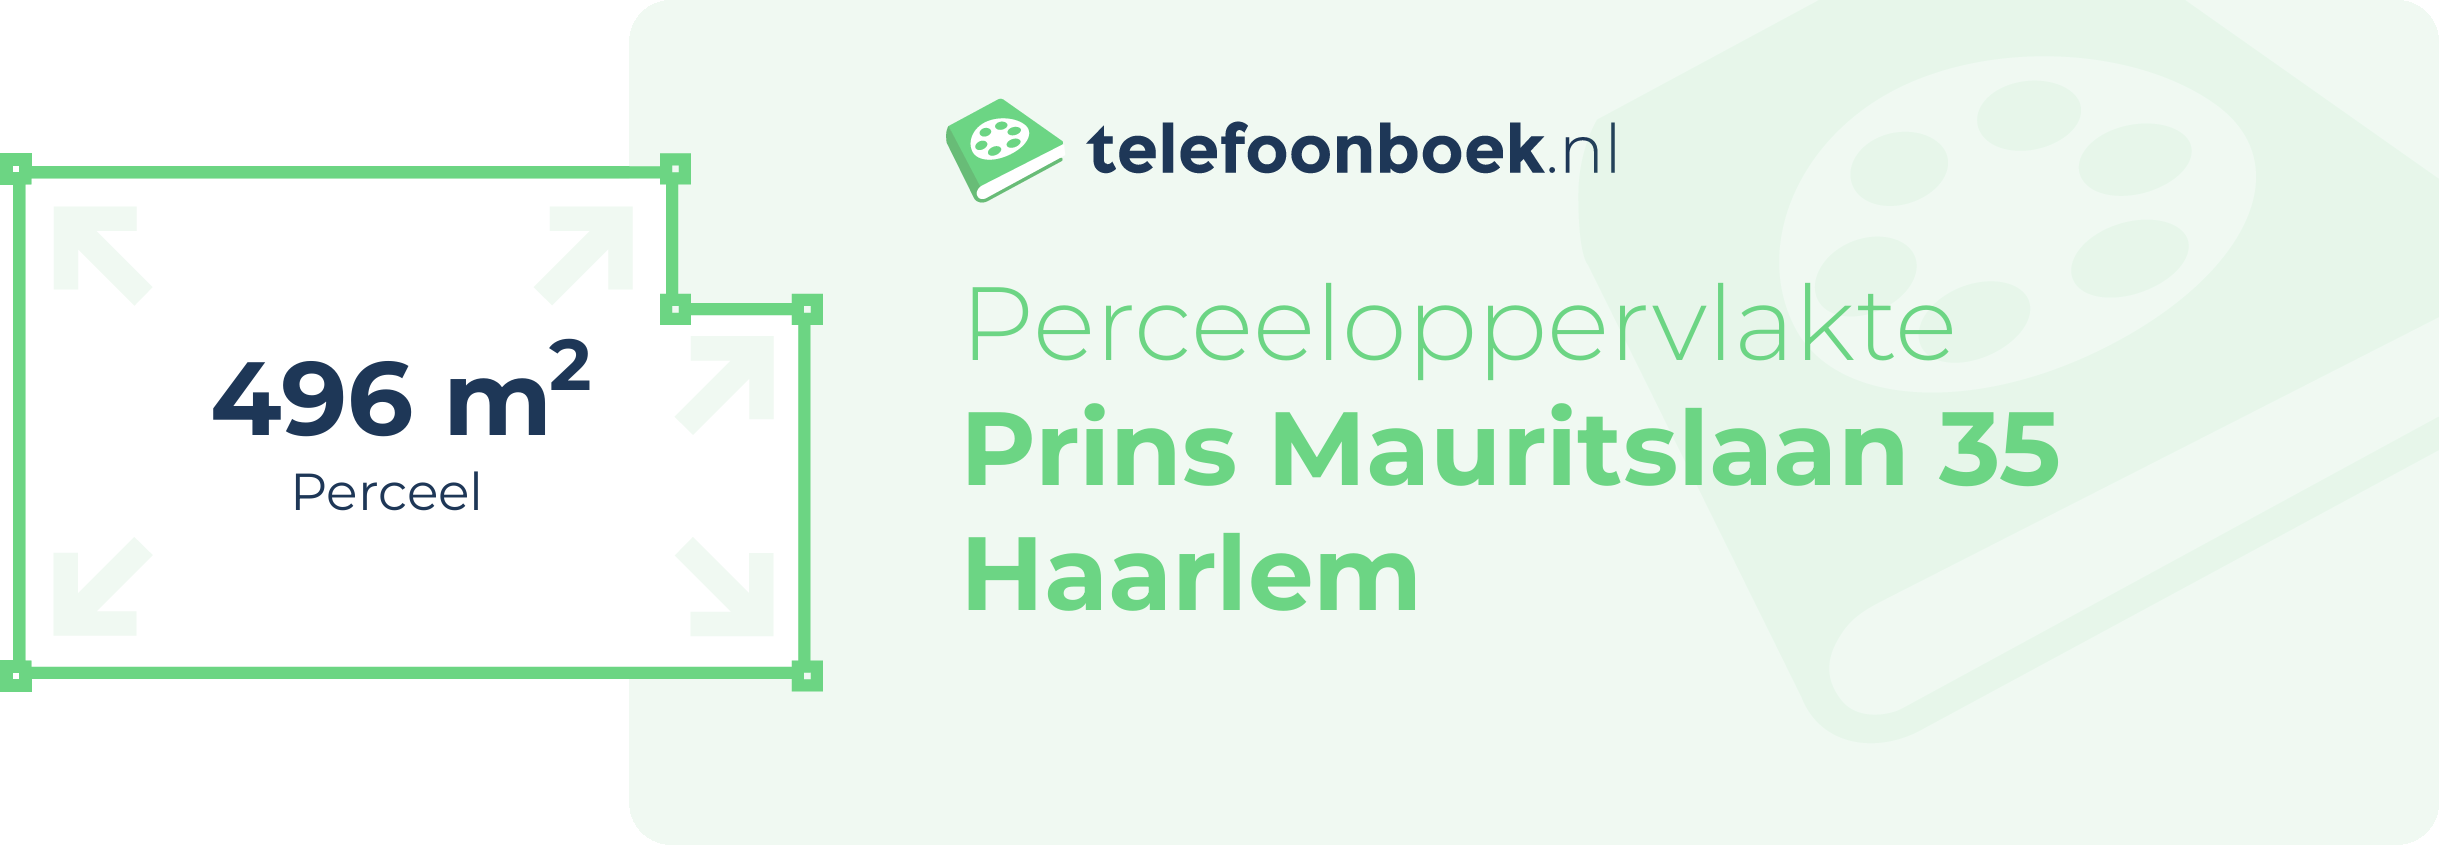 Perceeloppervlakte Prins Mauritslaan 35 Haarlem